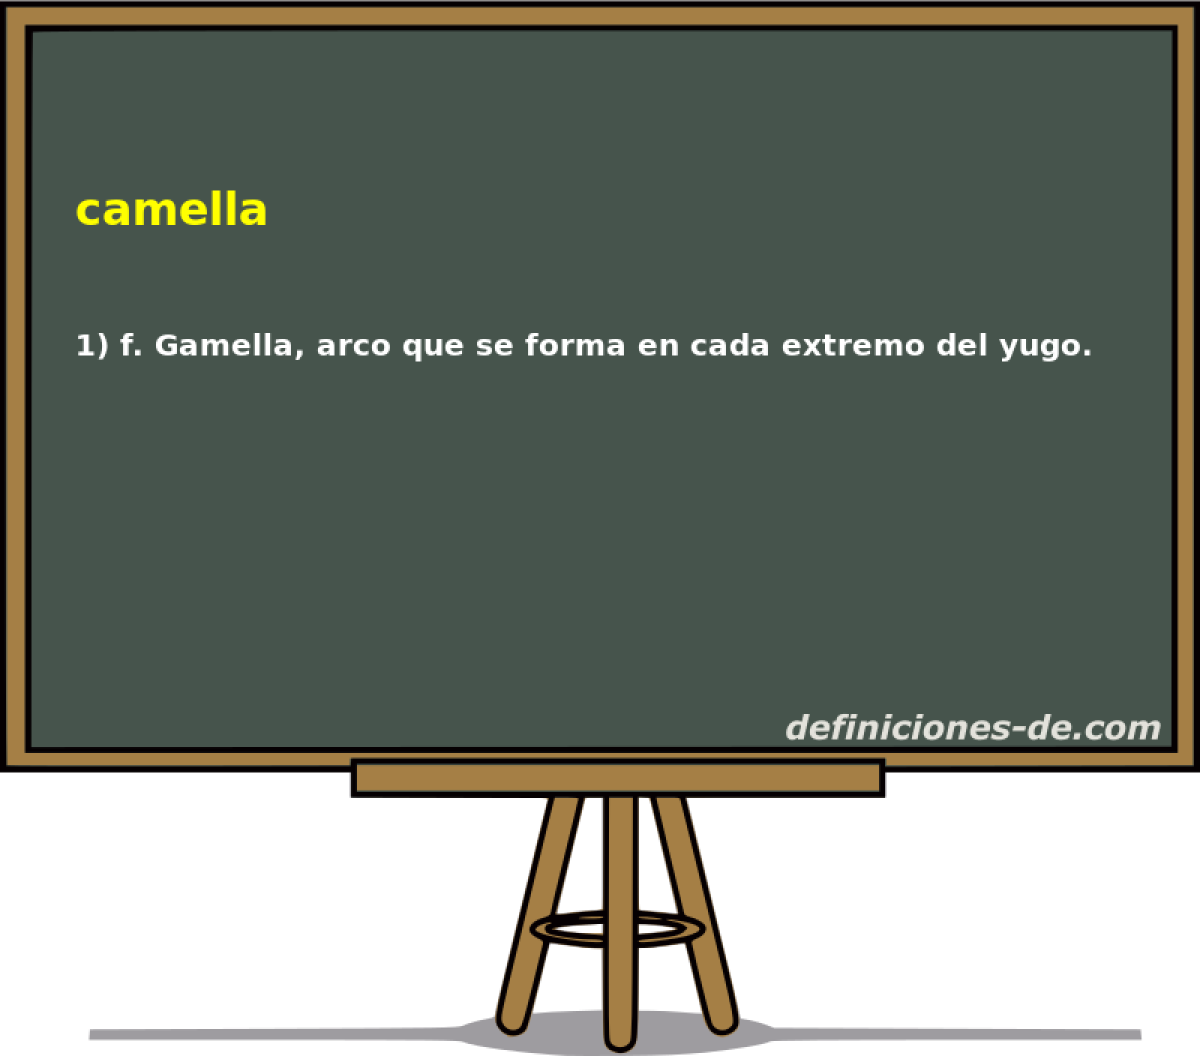 camella 